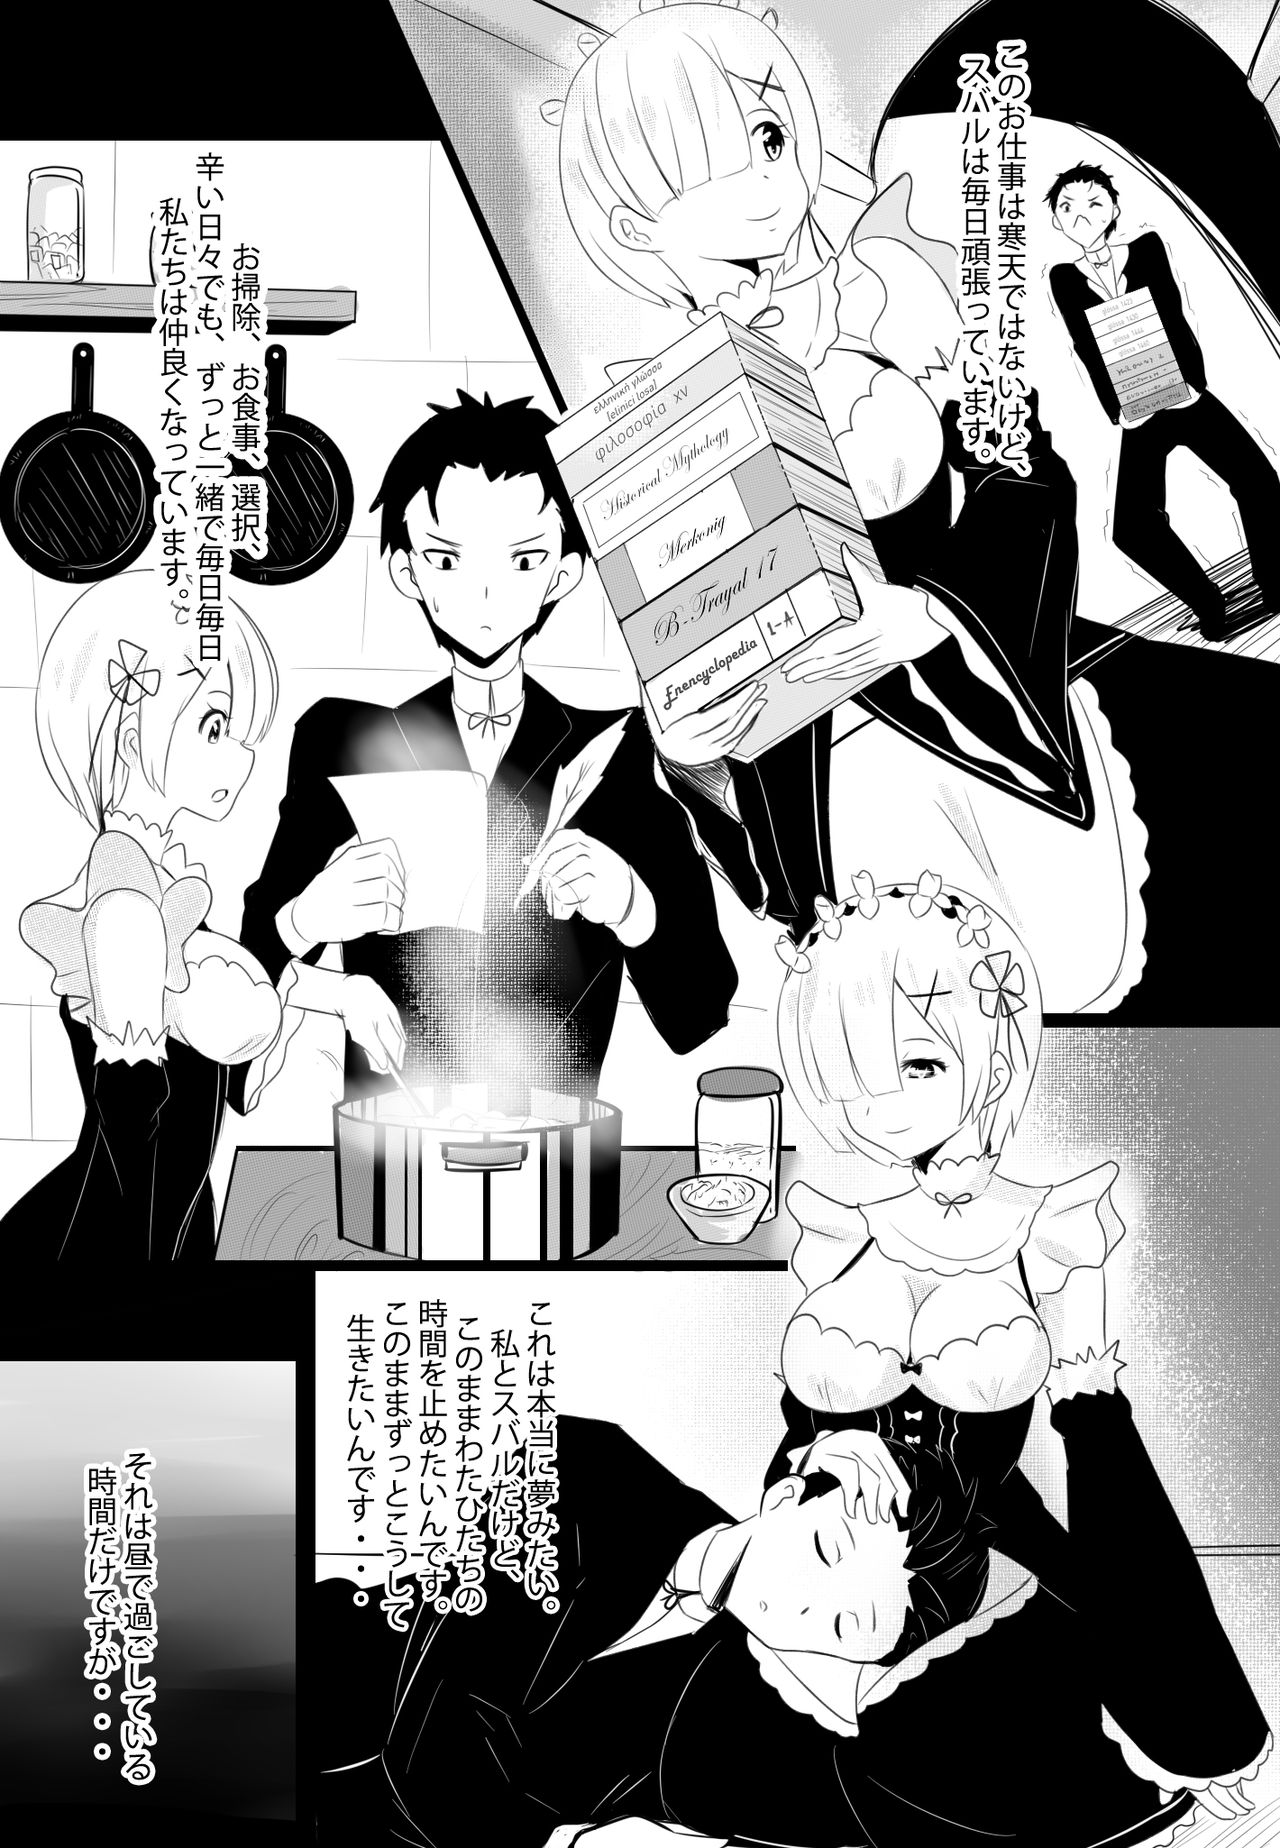 [Merkonig] B-Trayal 17 Rem (Re:Zero kara Hajimeru Isekai Seikatsu) page 4 full